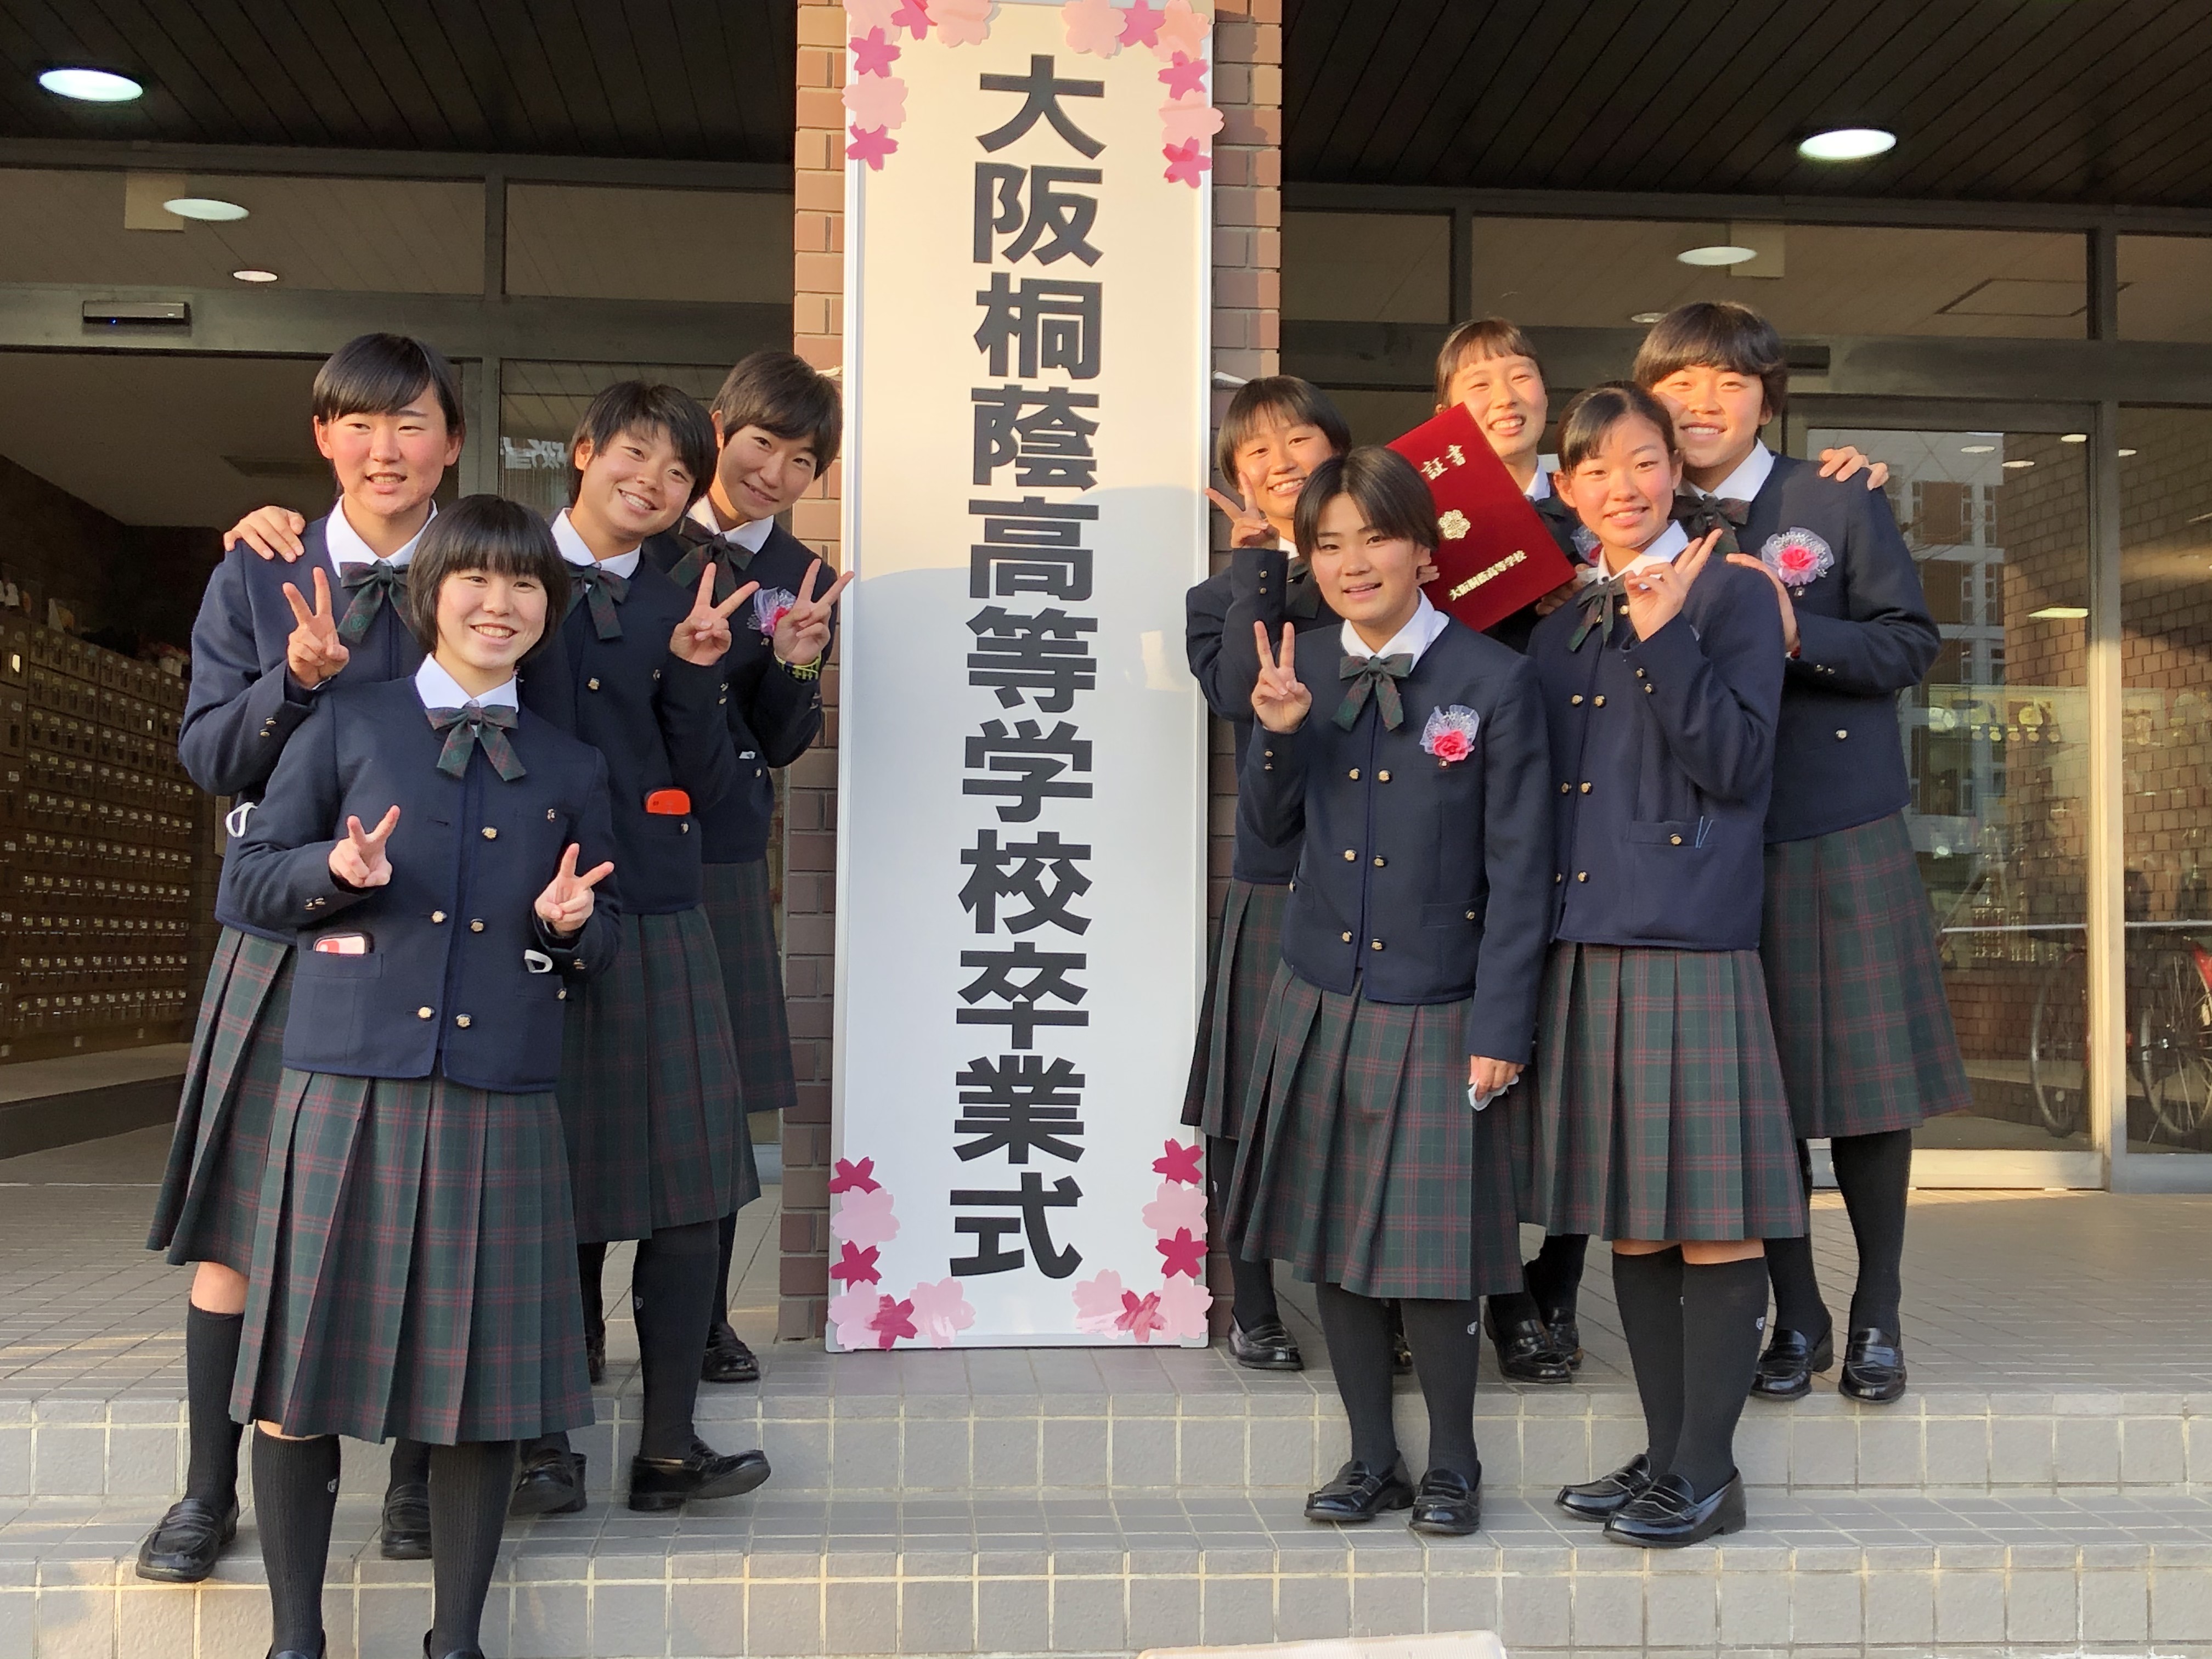 卒業: 大阪桐蔭高校女子サッカーブログ